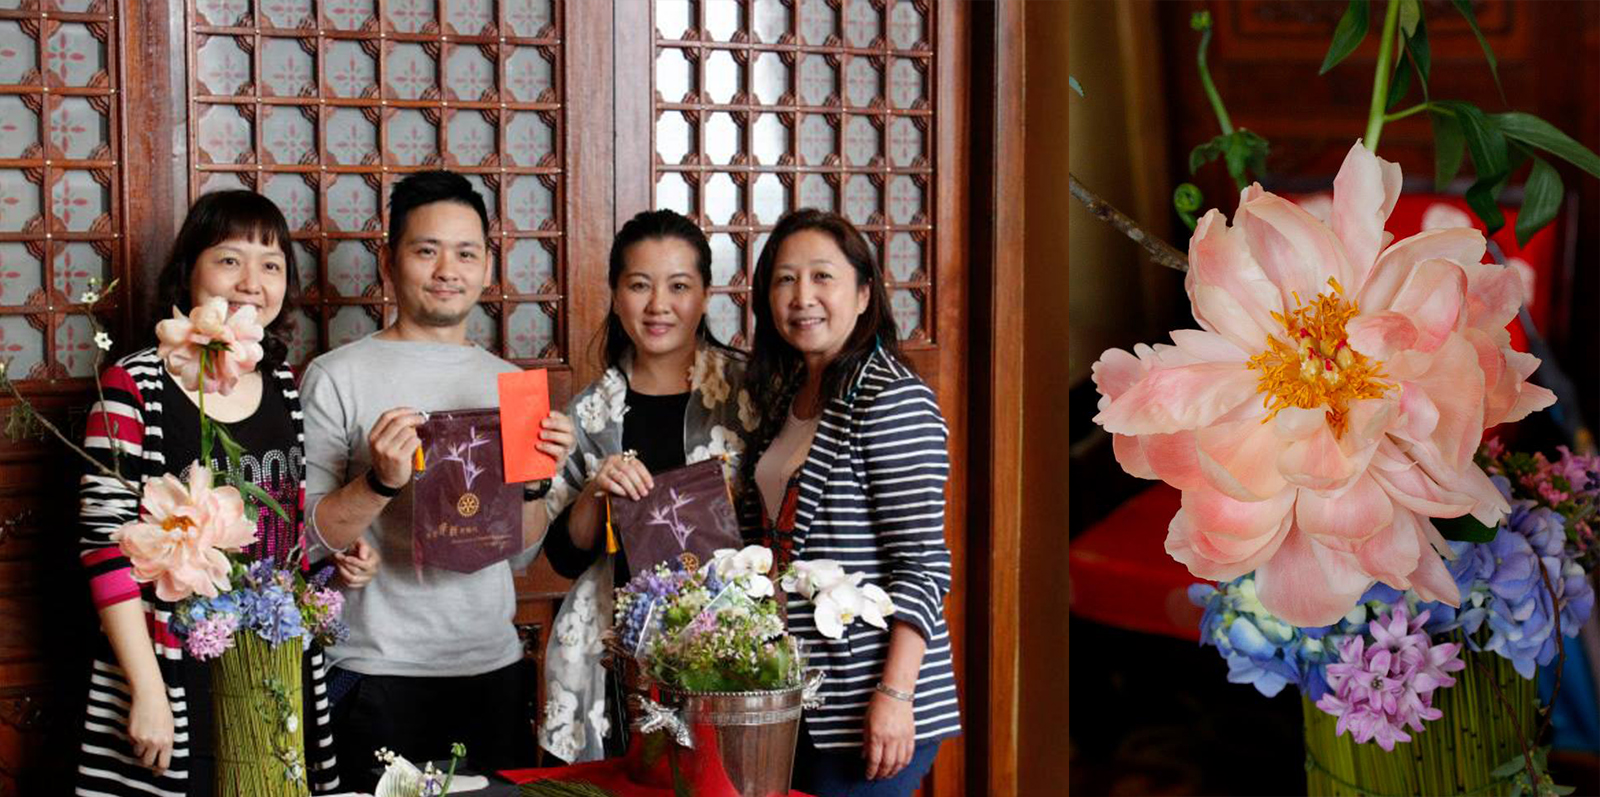 我們感謝台北華新扶輪社的邀請, 讓我們在當中講解花見理念和茶事分享